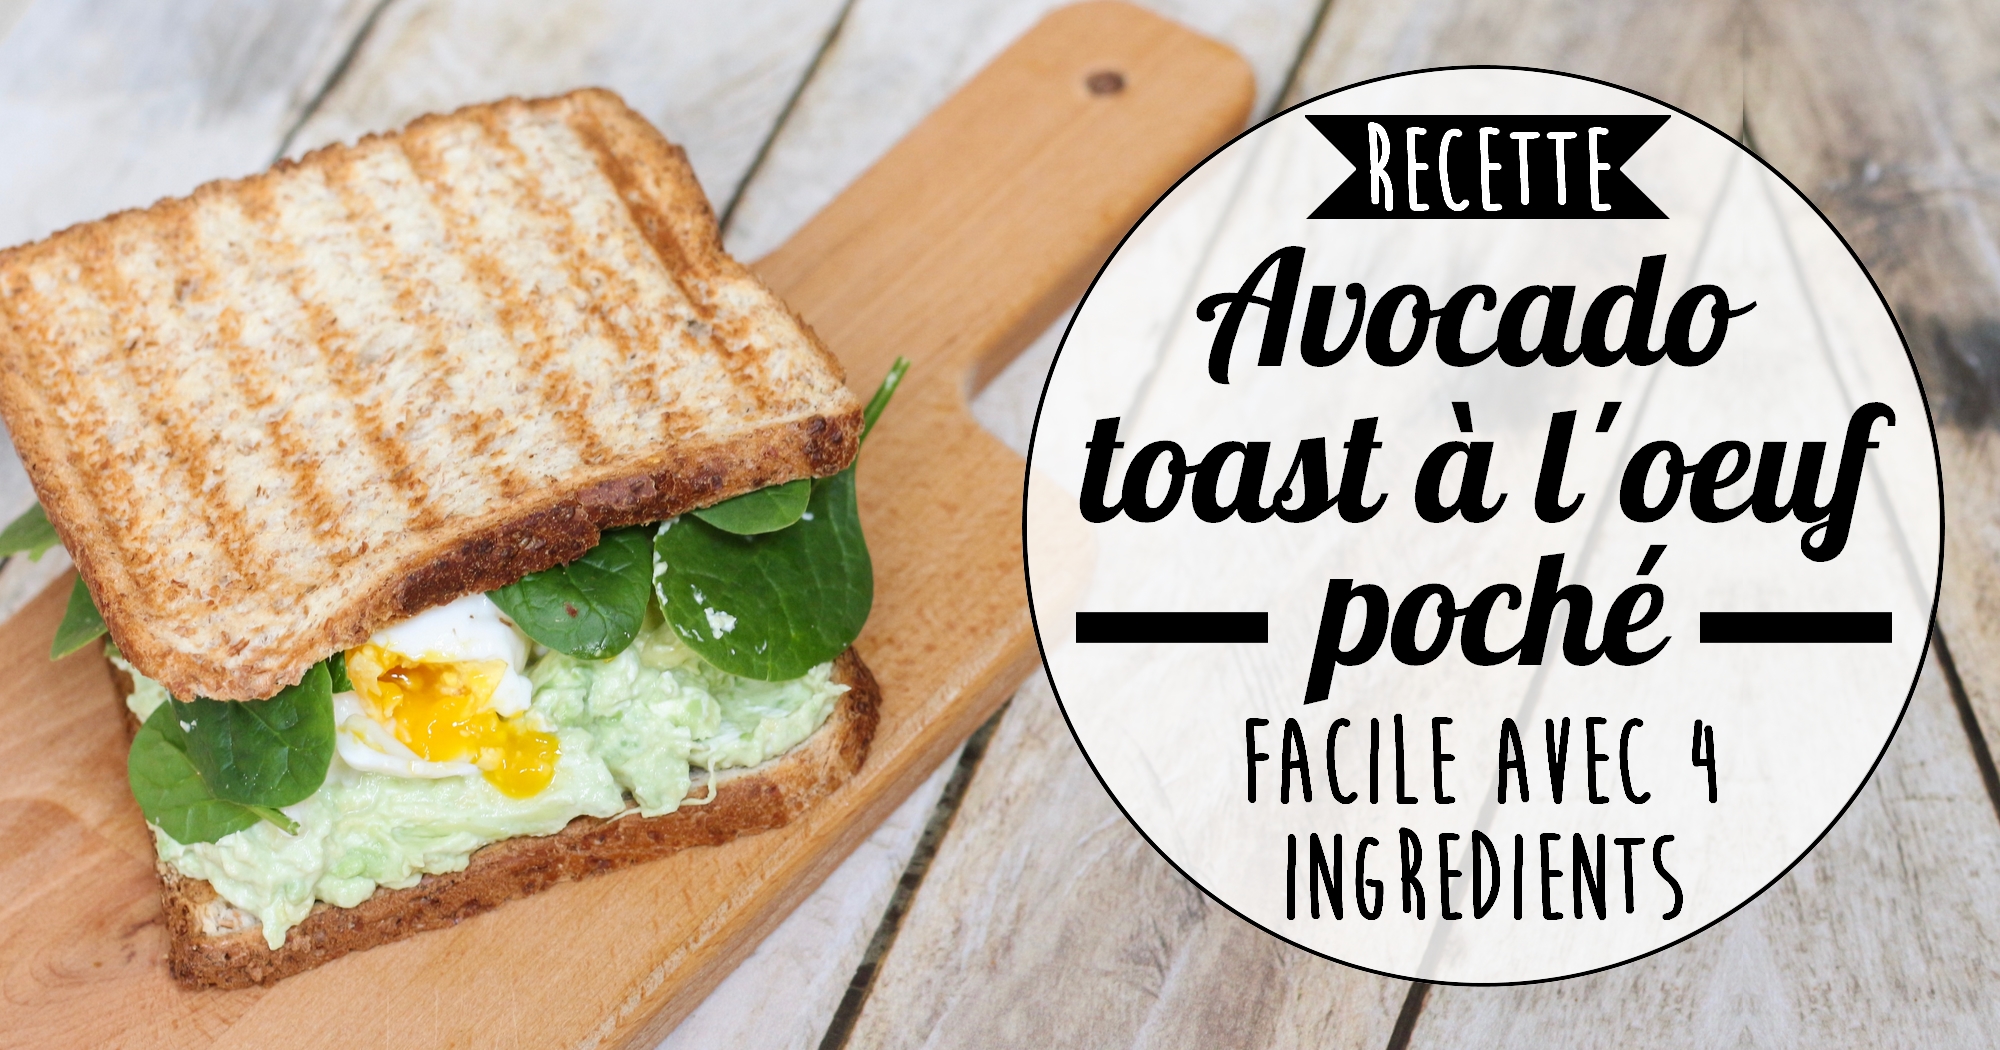 Recette rapide avec 4 ingrédients : avocado toast et oeuf poché